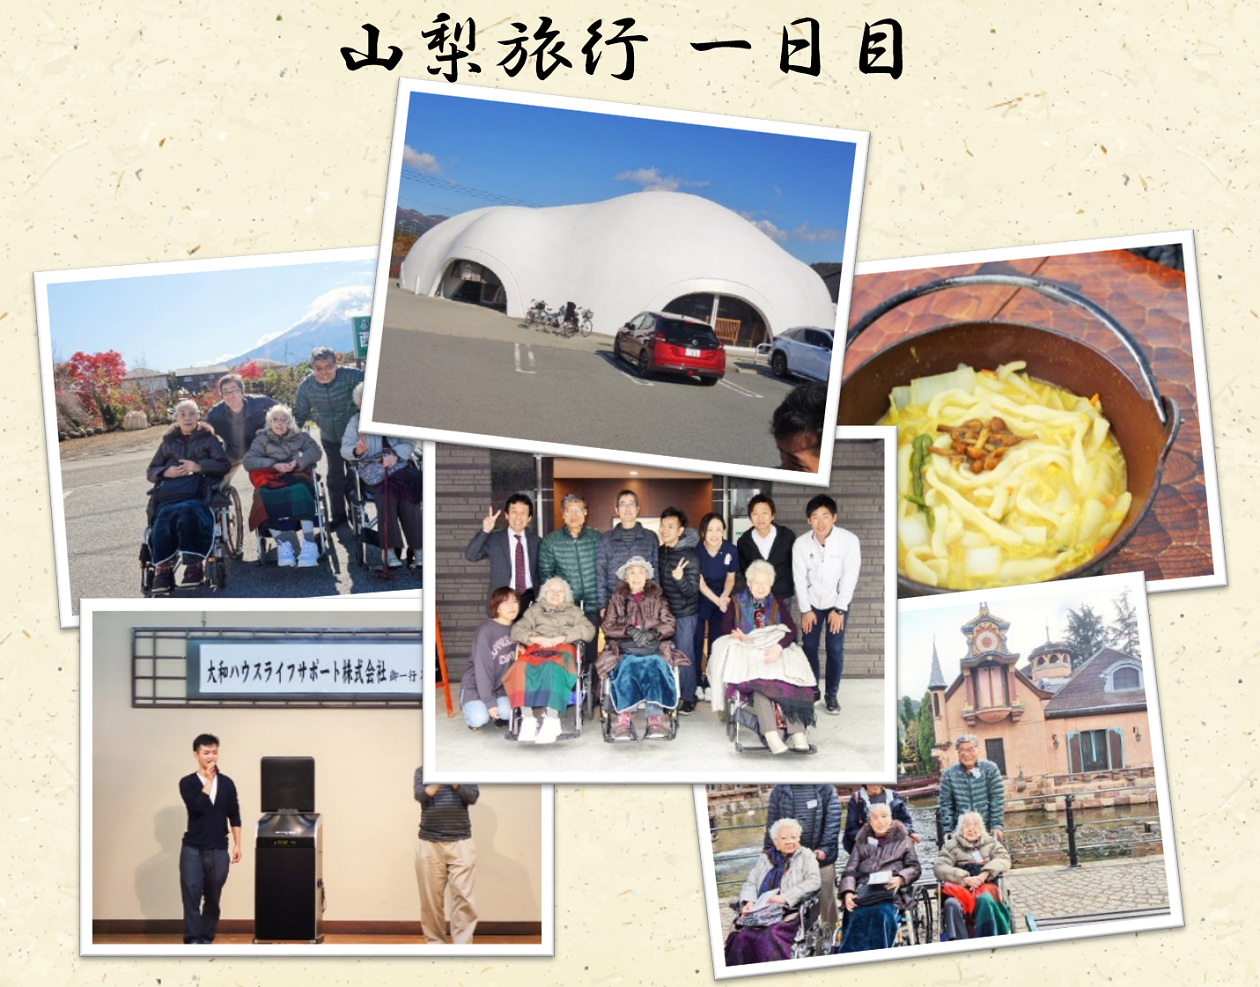 11月11日～12日　第11回 6館合同旅行プロジェクトを実施しました。